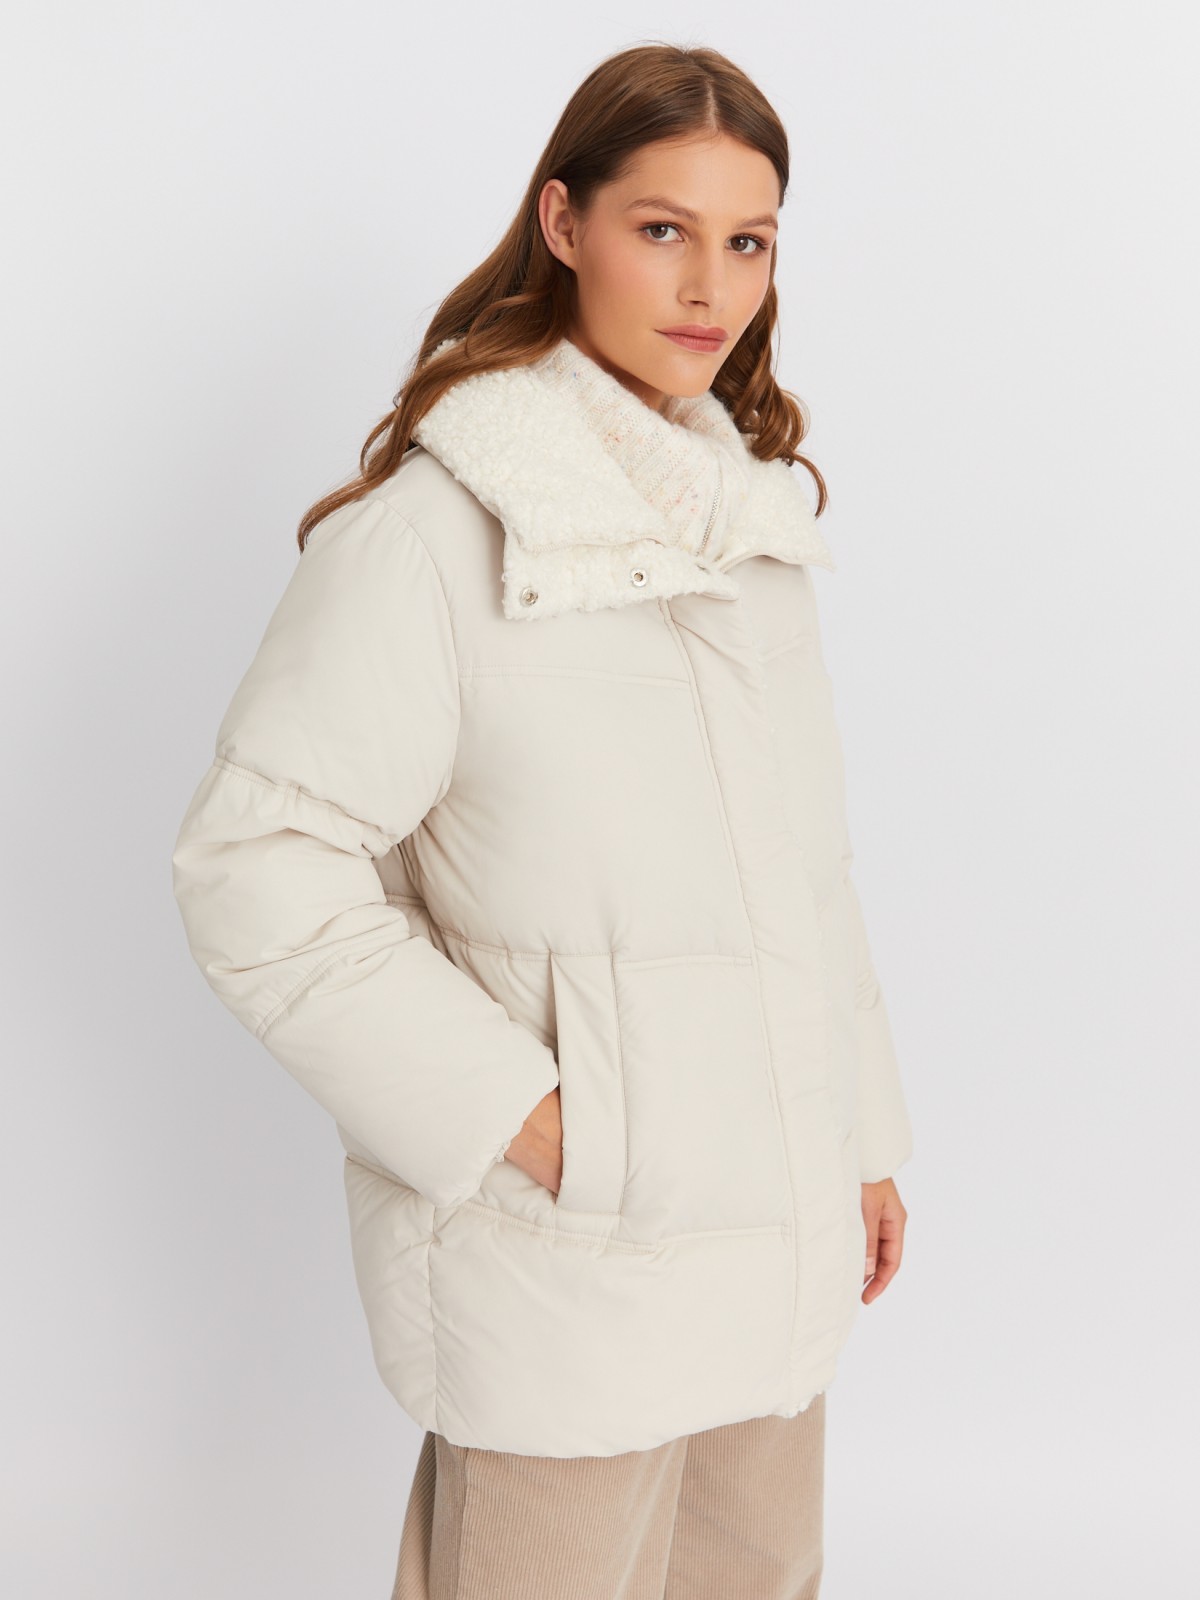 Тёплая стёганая куртка с воротником-стойкой и отделкой из экомеха zolla 023425102044, цвет молоко, размер XS - фото 3